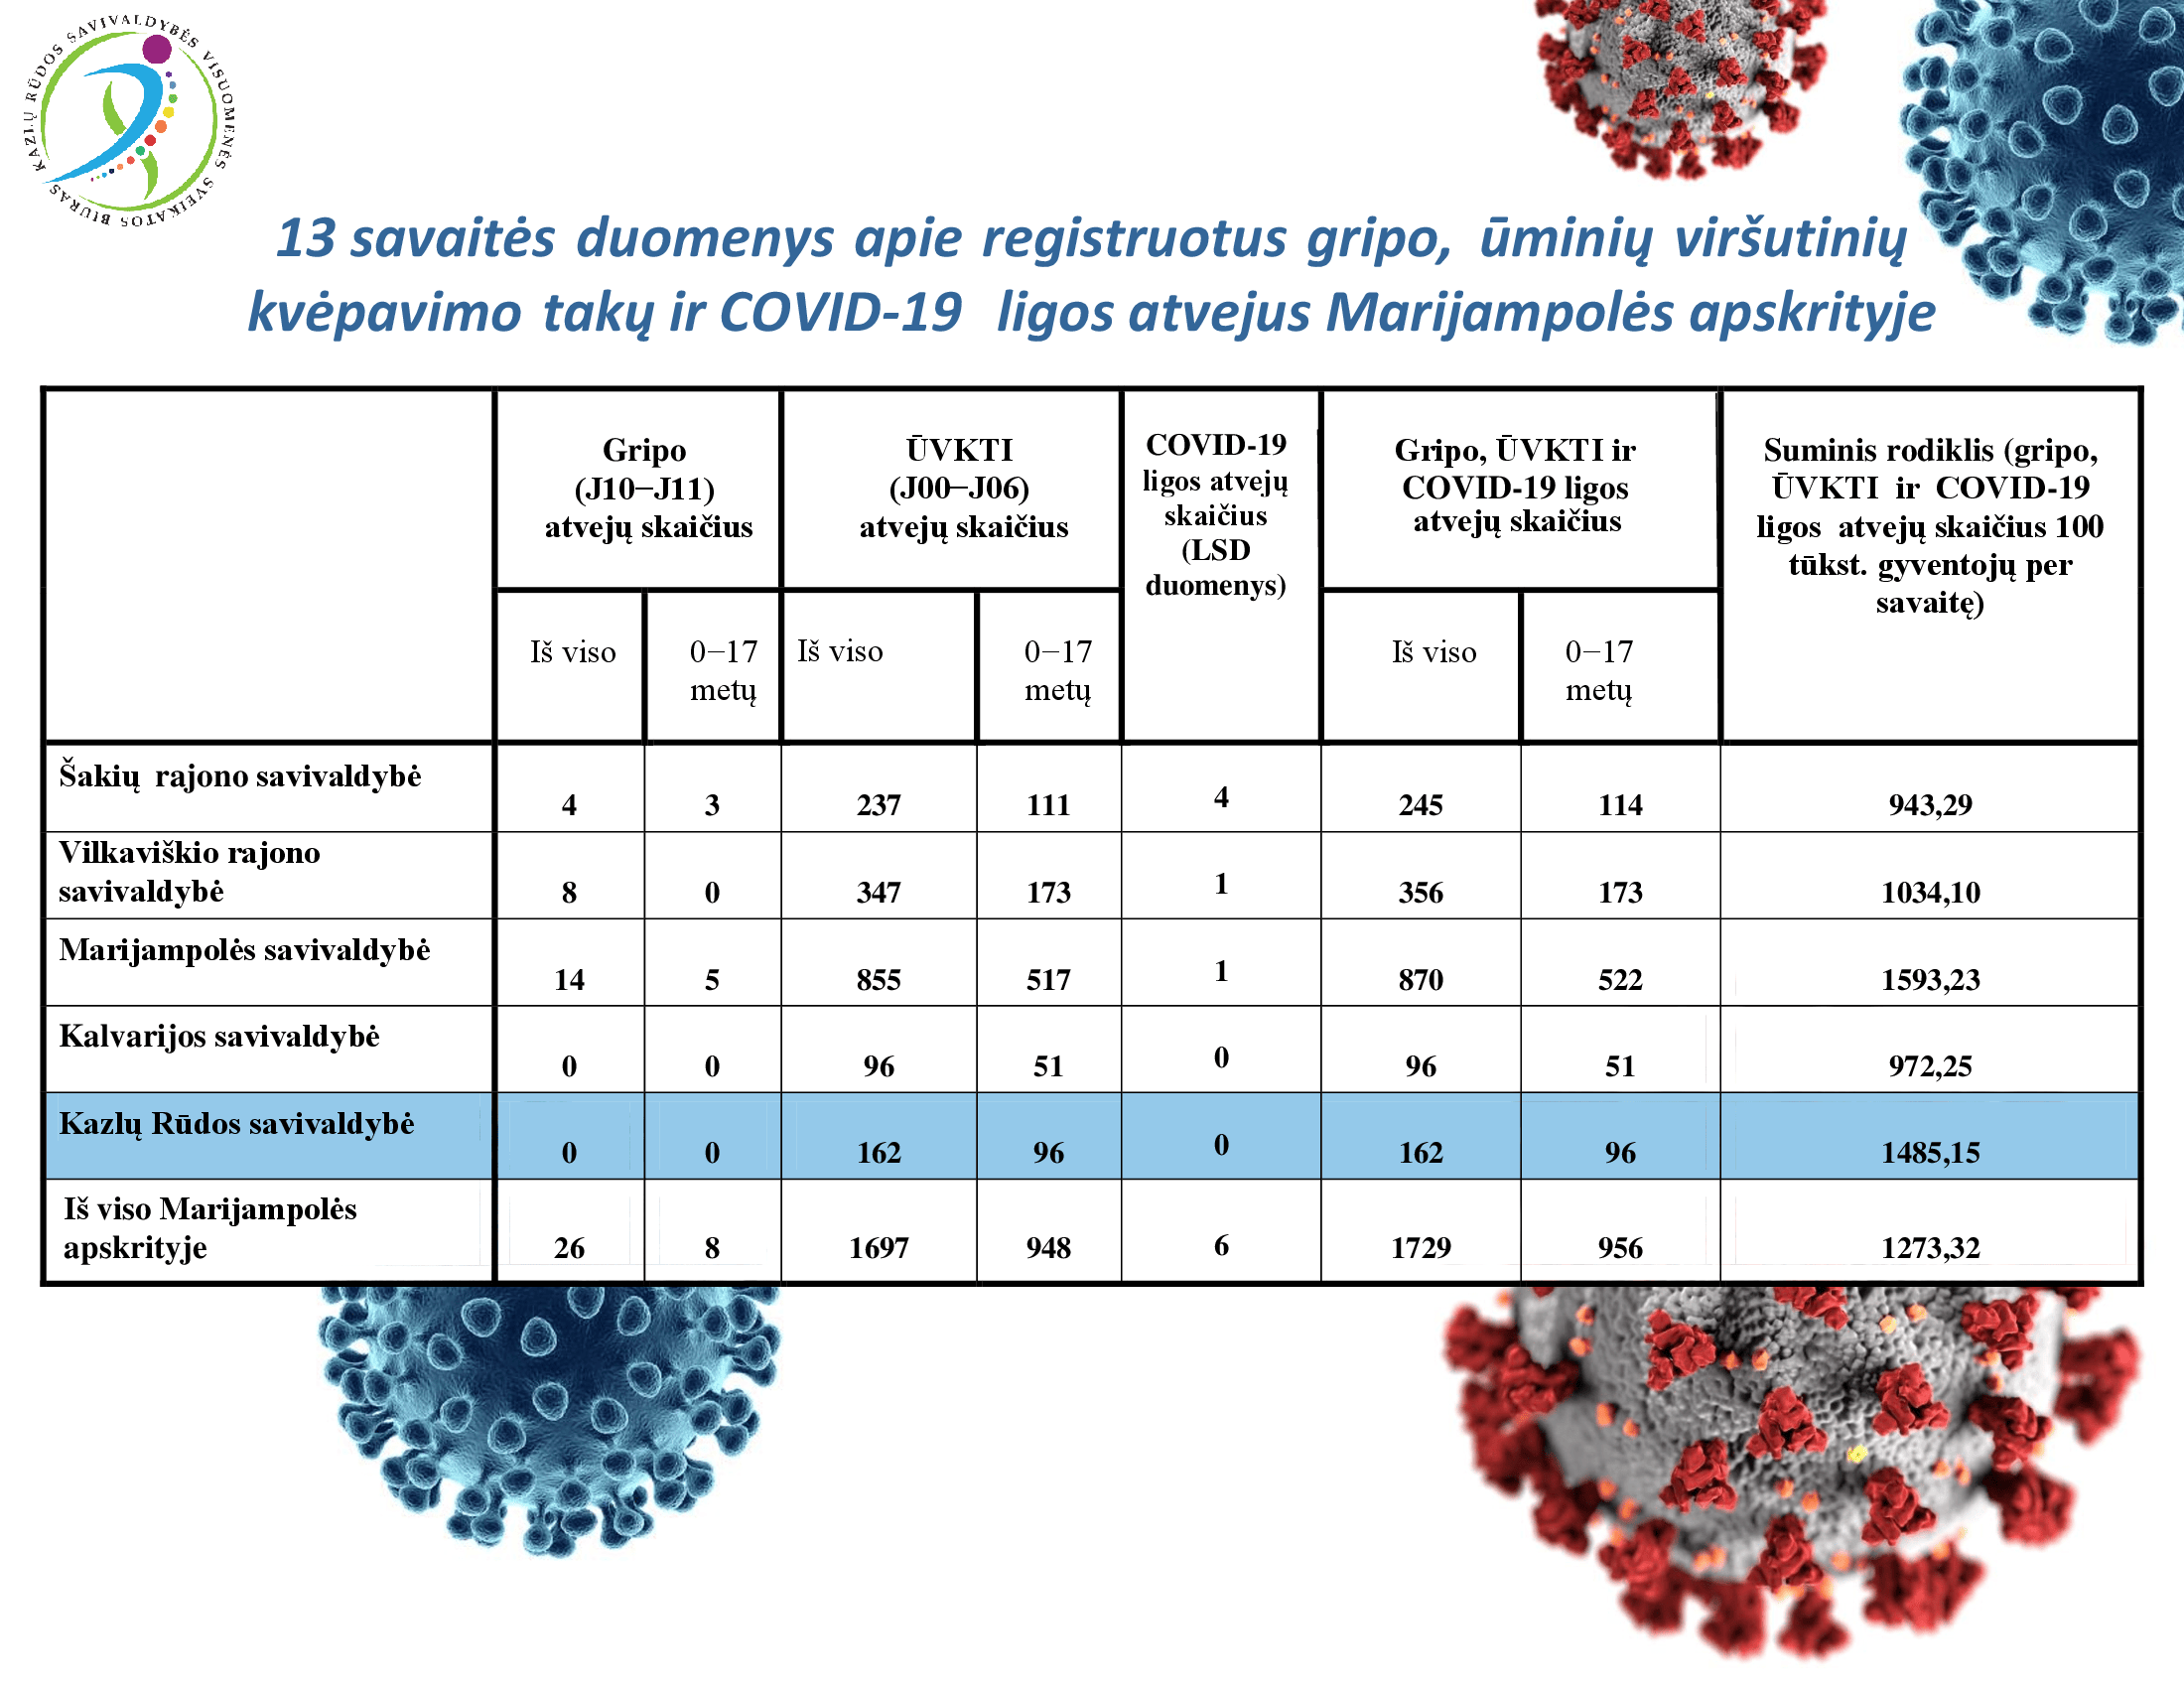 13-savaites-duomenys-apie-registruotus-gripo,-uminiu-virsutiniu-kvepavimo-taku-ir-covid-19-ligos-atvejus-marijampoles-apskrityje-